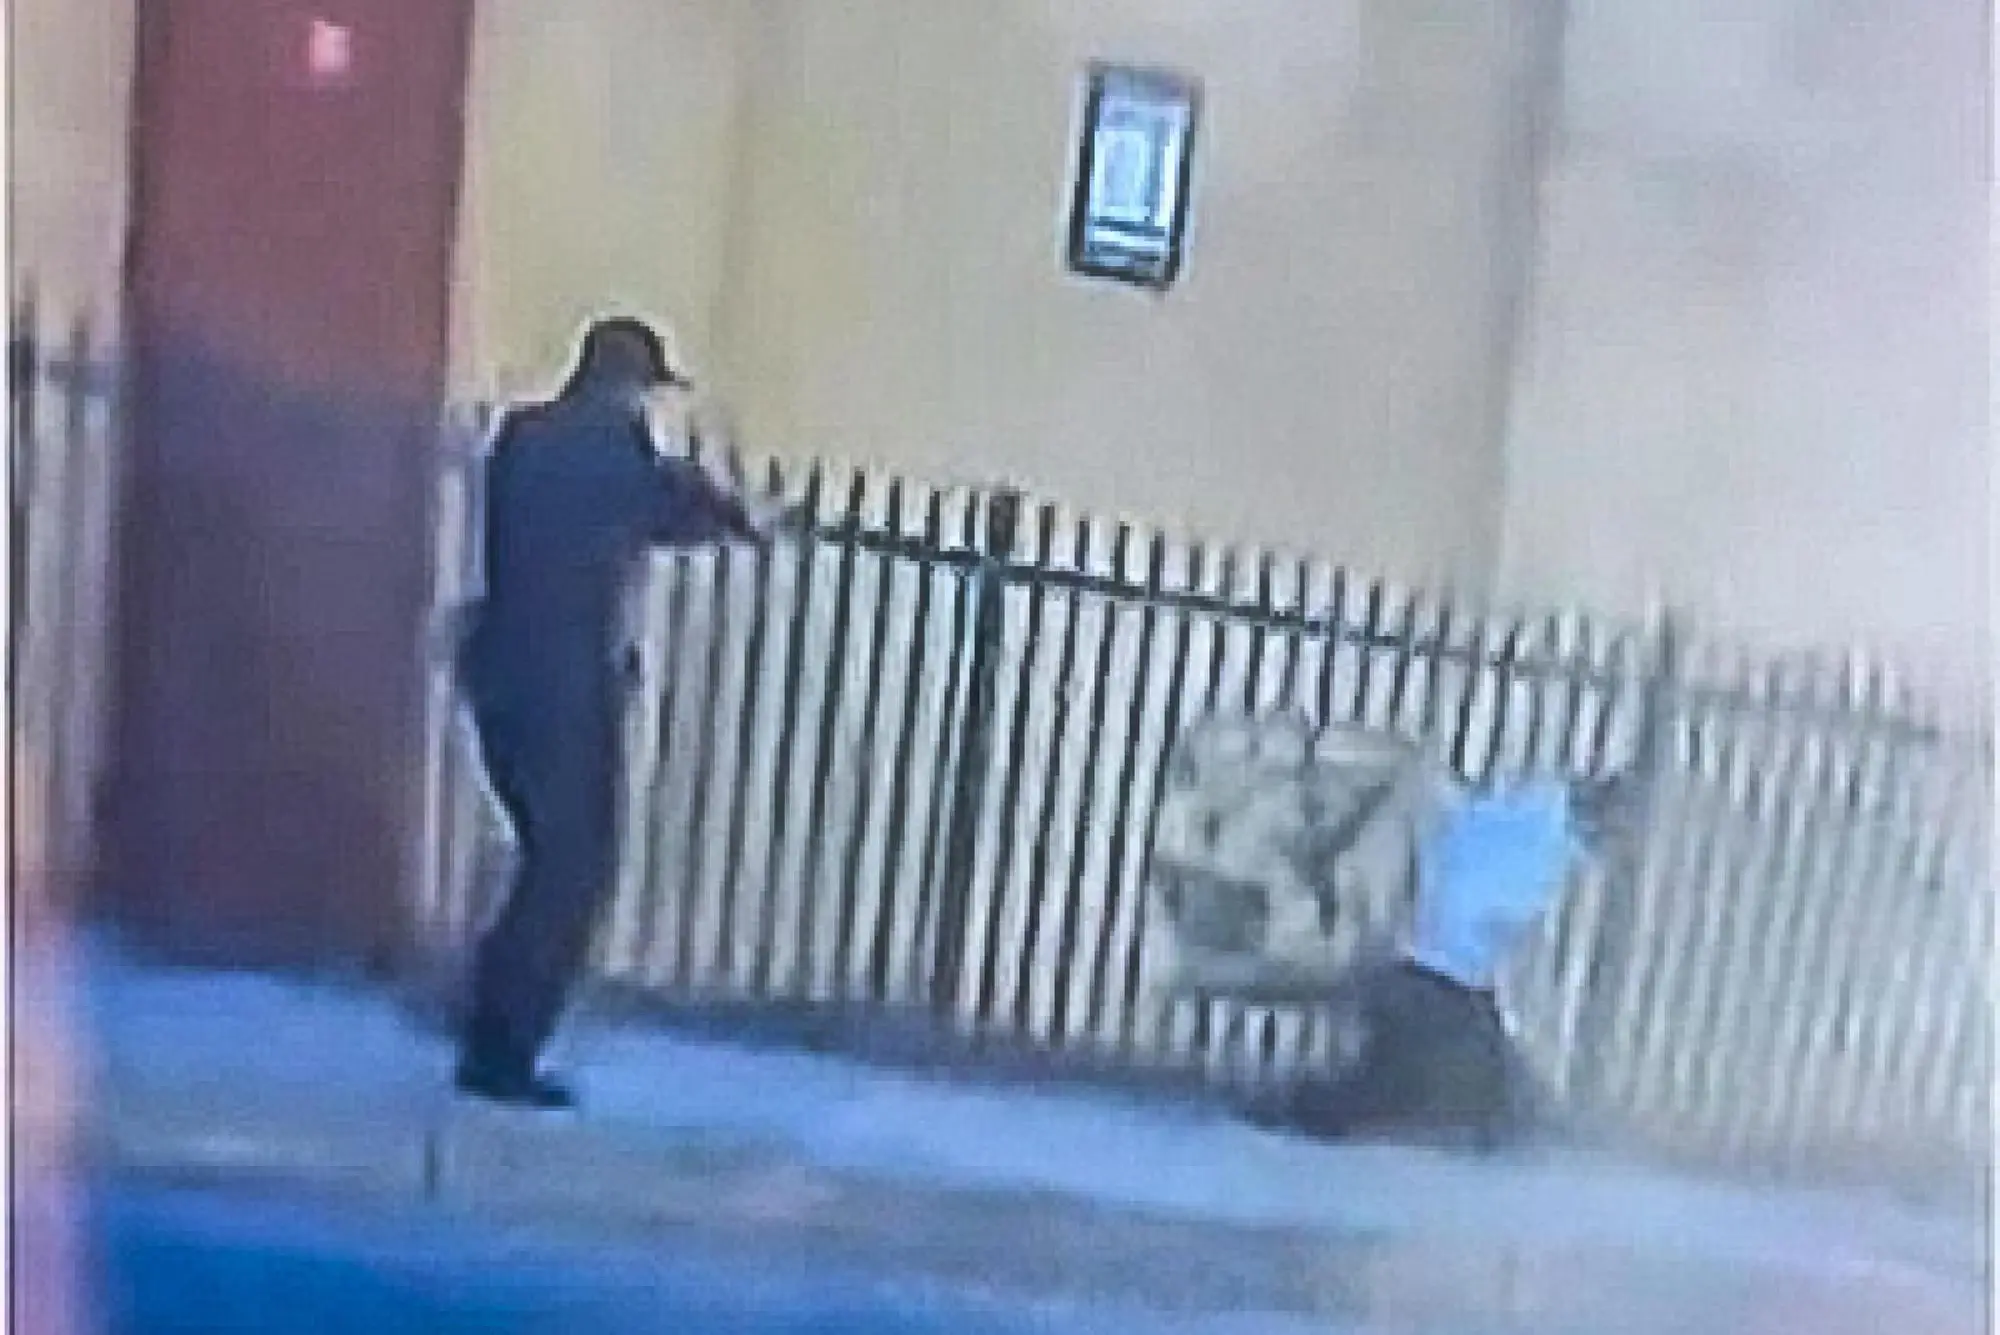 Polizia spara e uccide afroamericano sulla sedia a rotelle (foto da frame video)